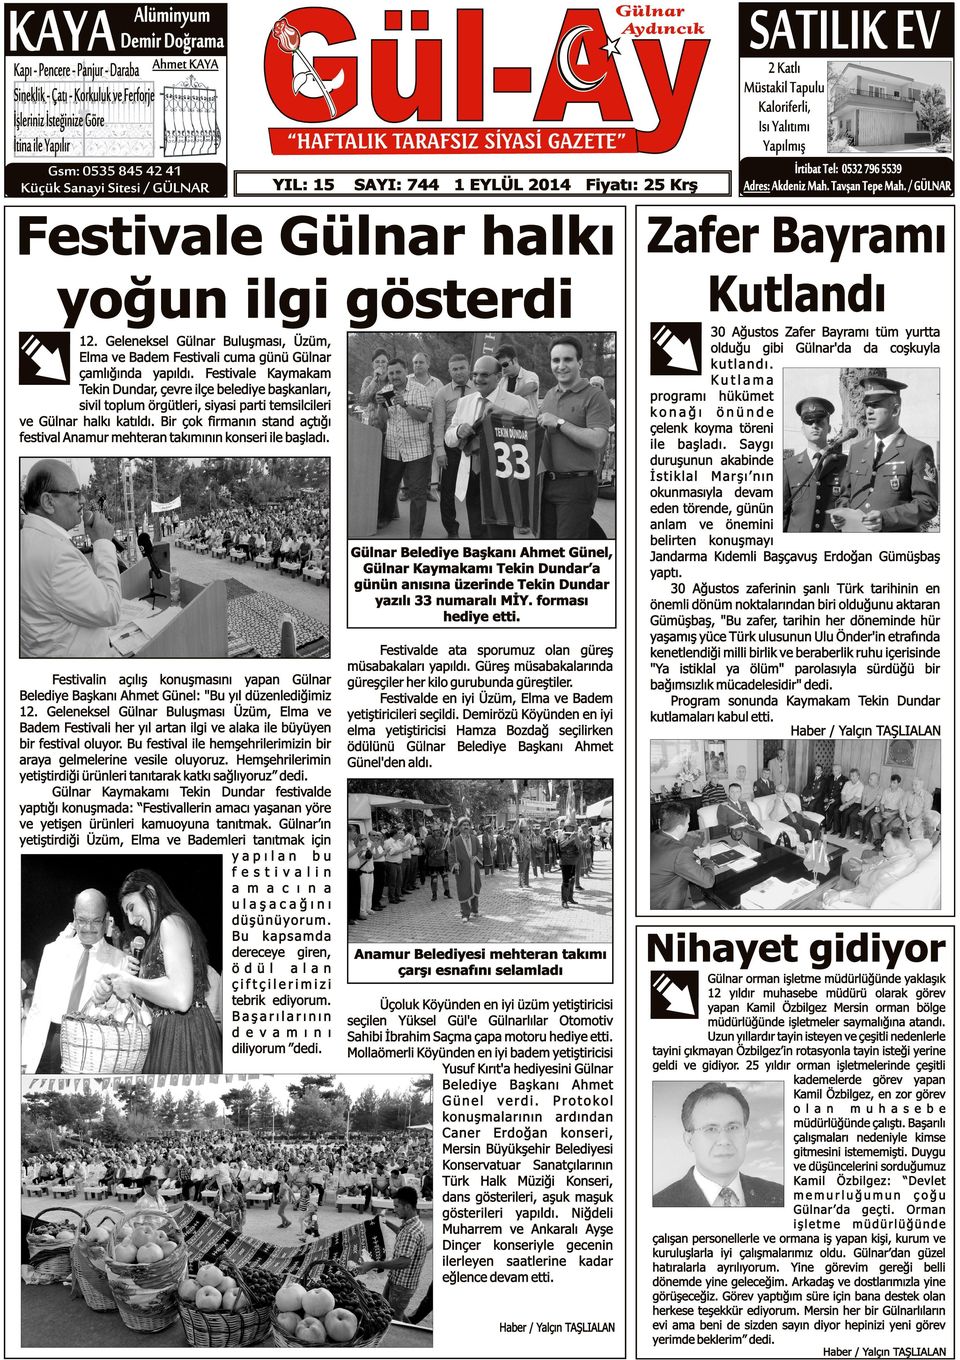 5539 Adres: Akdeniz Mah. Tavşan Tepe Mah. / GÜLNAR Festivale Gülnar halkı Zafer Bayramı Kutlandı yoğun ilgi gösterdi 12.